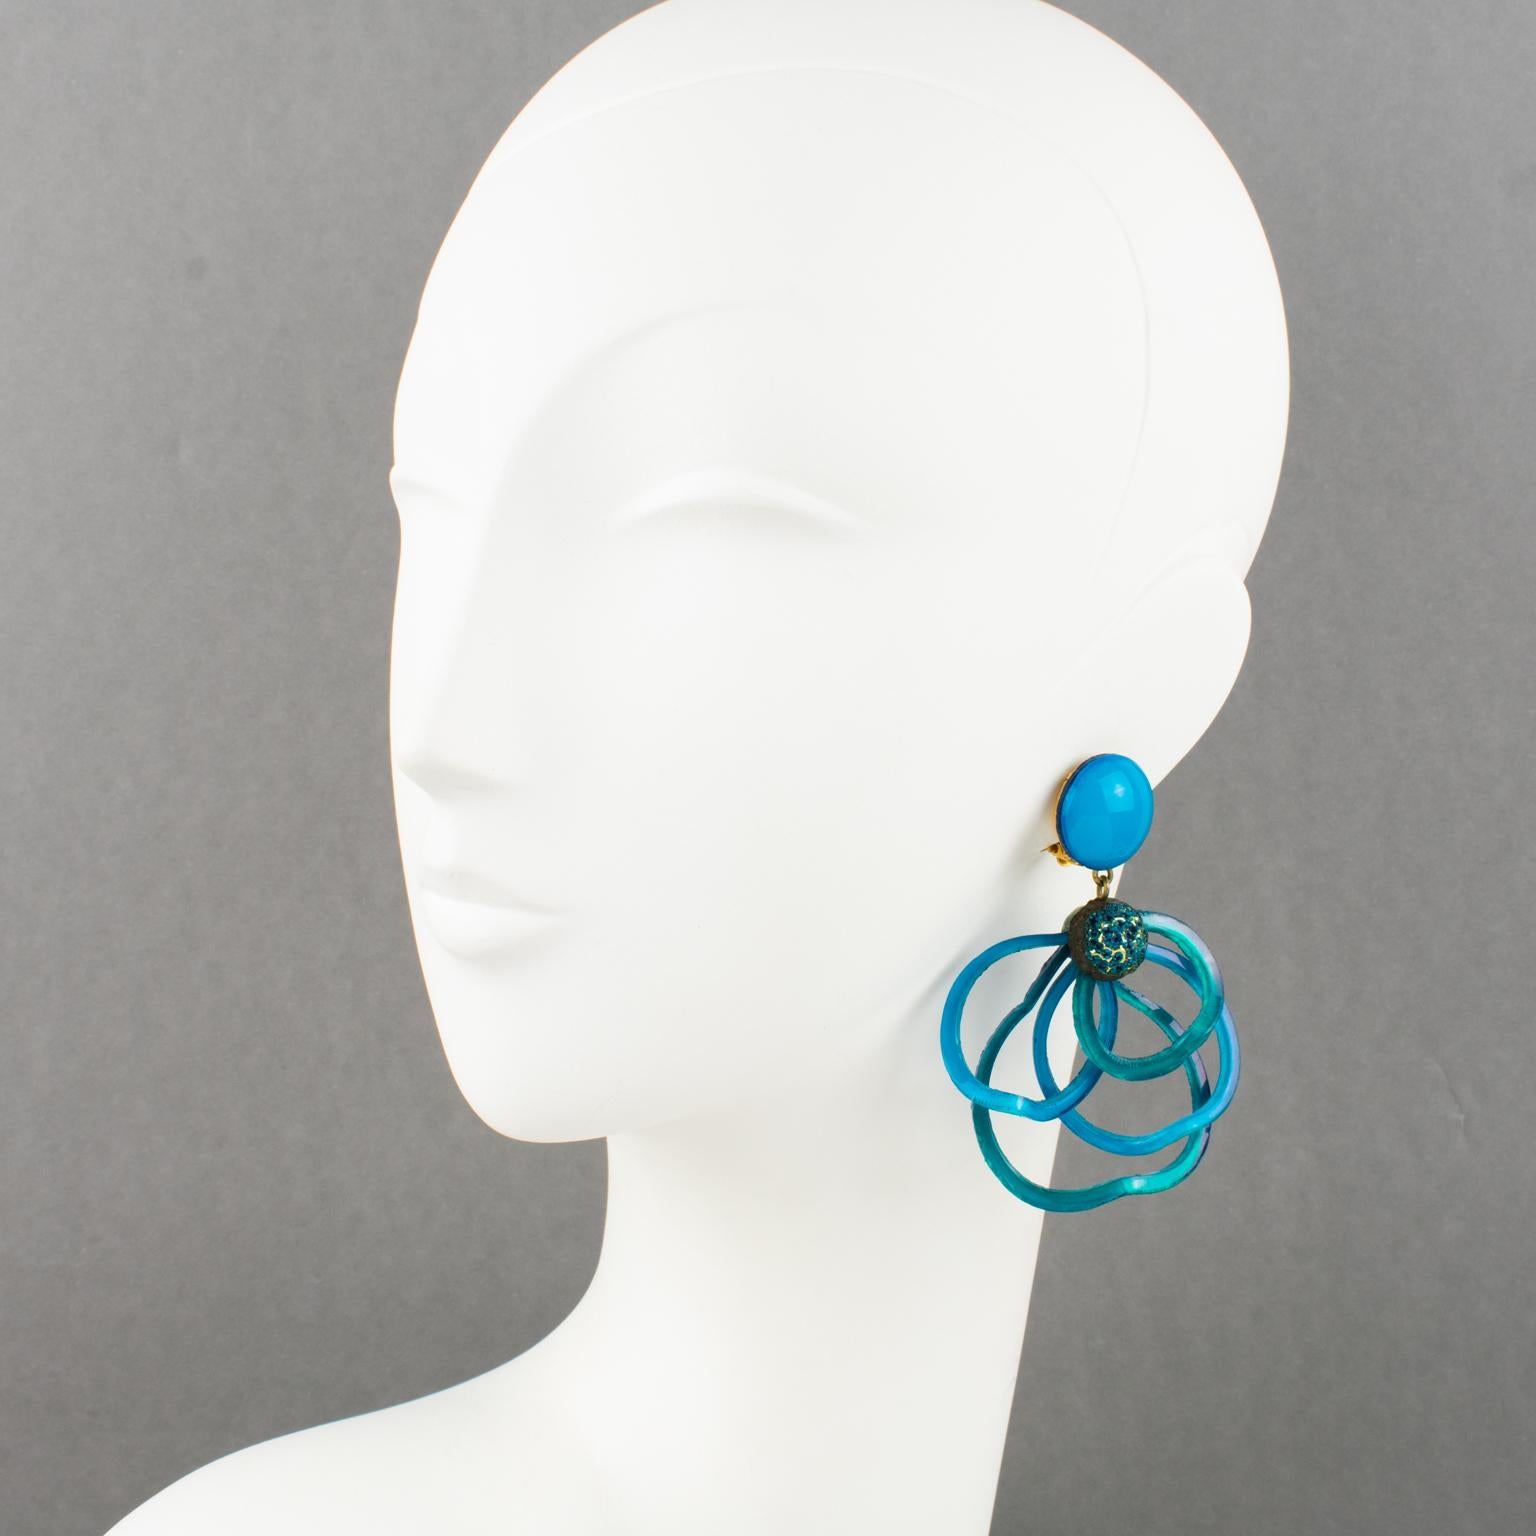 Cilea Paris hat diese hübschen dreidimensionalen, baumelnden Clip-Ohrringe entworfen. Diese handgefertigten Ohrringe aus Kunstharz zeichnen sich durch ein strukturiertes Muster aus mehreren Looping-Arabeskenbändern aus, die sich zusammenfügen und